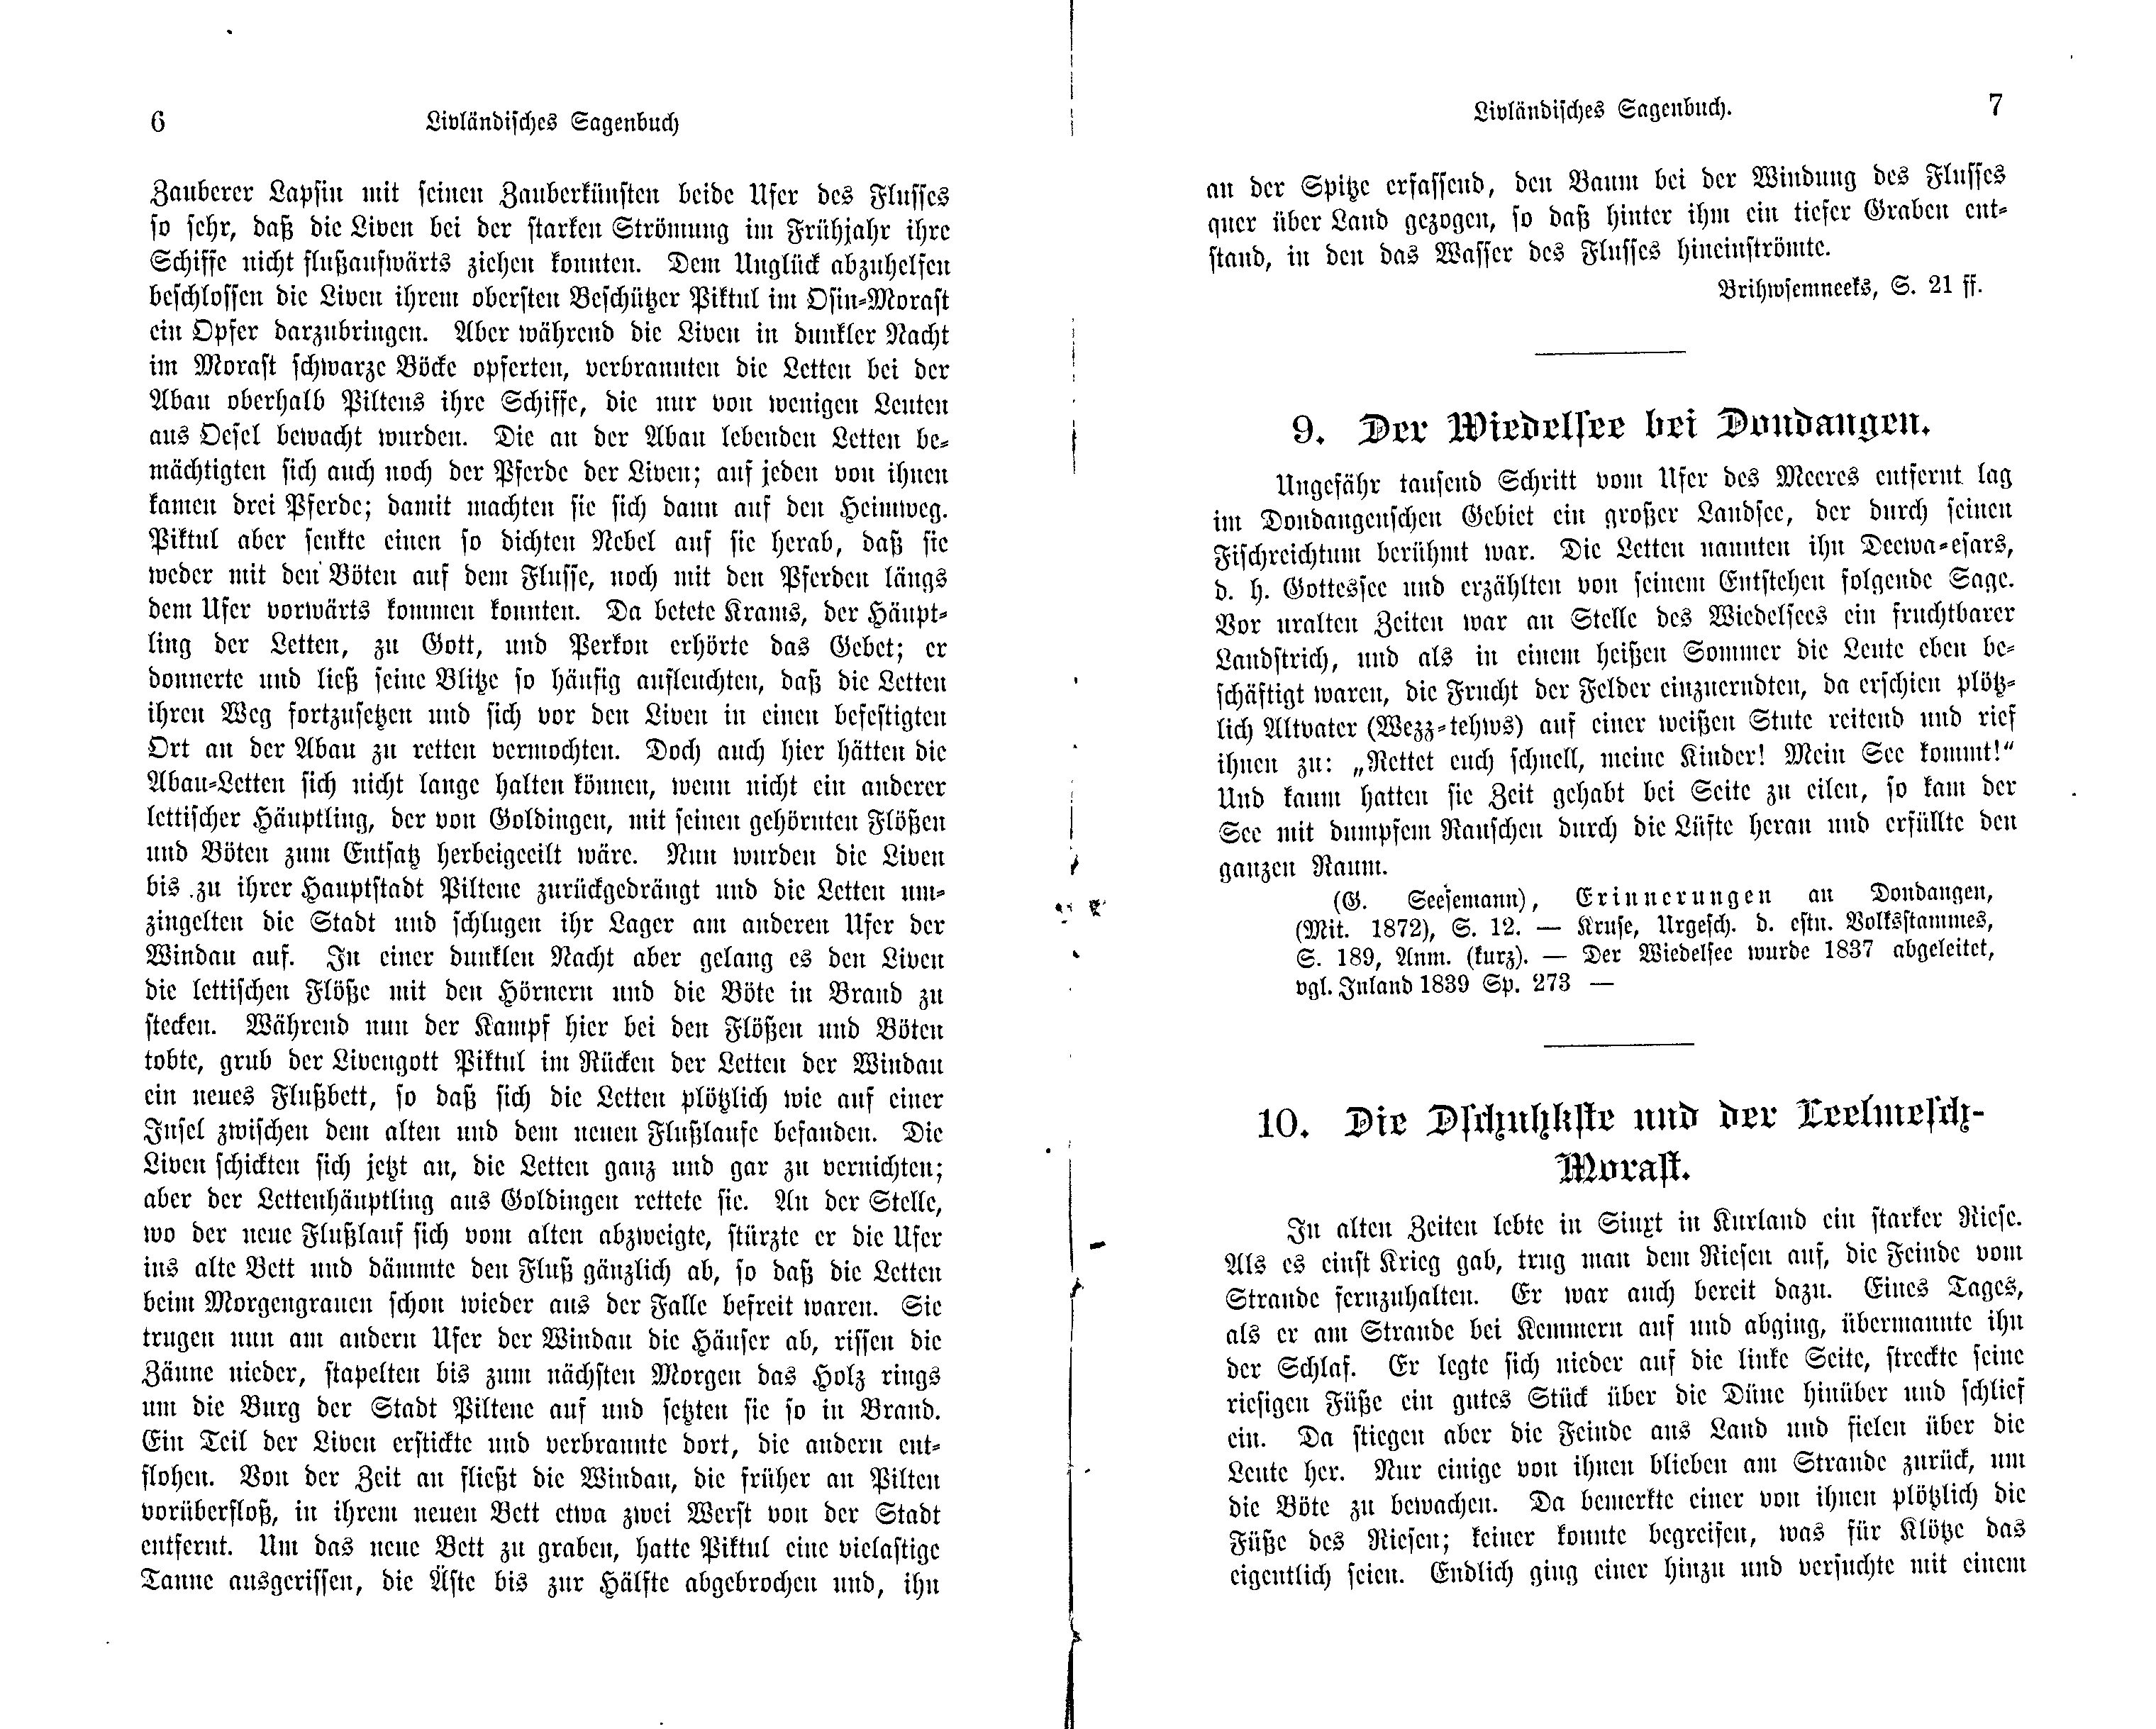 Livländisches Sagenbuch (1897) | 15. (6-7) Haupttext